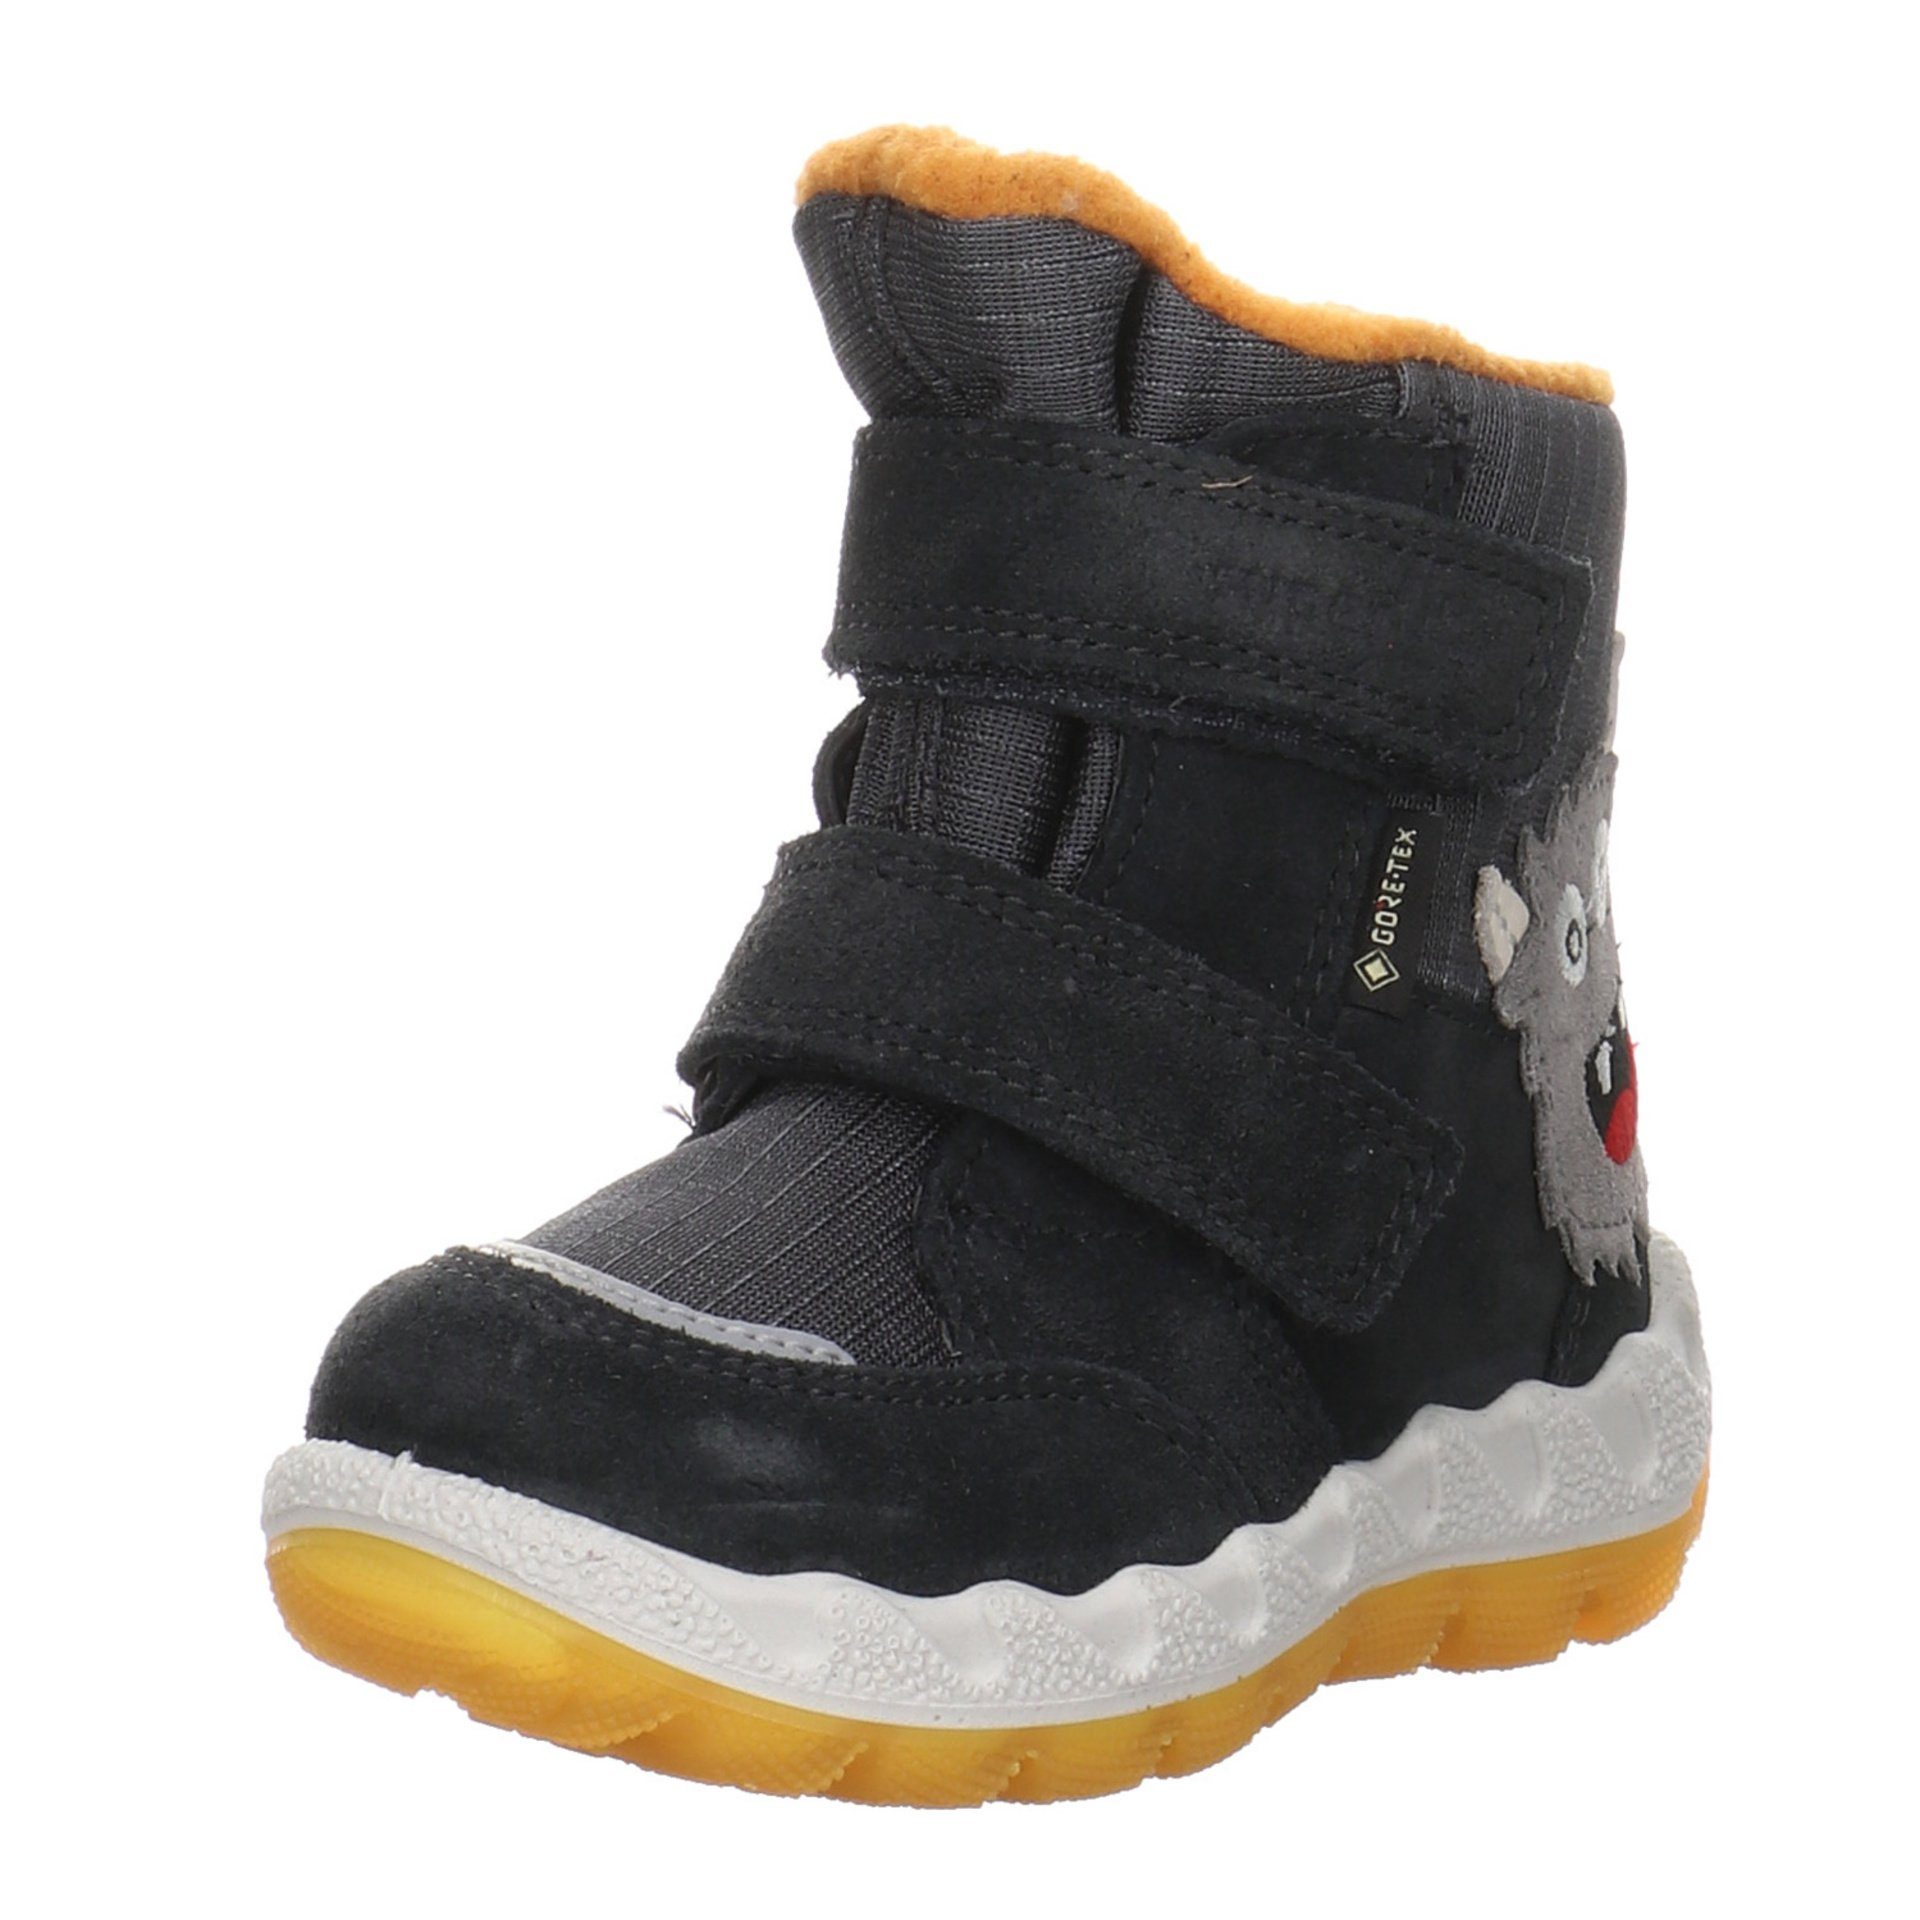 Superfit Baby Lauflernschuhe Boots Leder-/Textilkombination Lauflernschuh grau gelb Icebird Krabbelschuhe